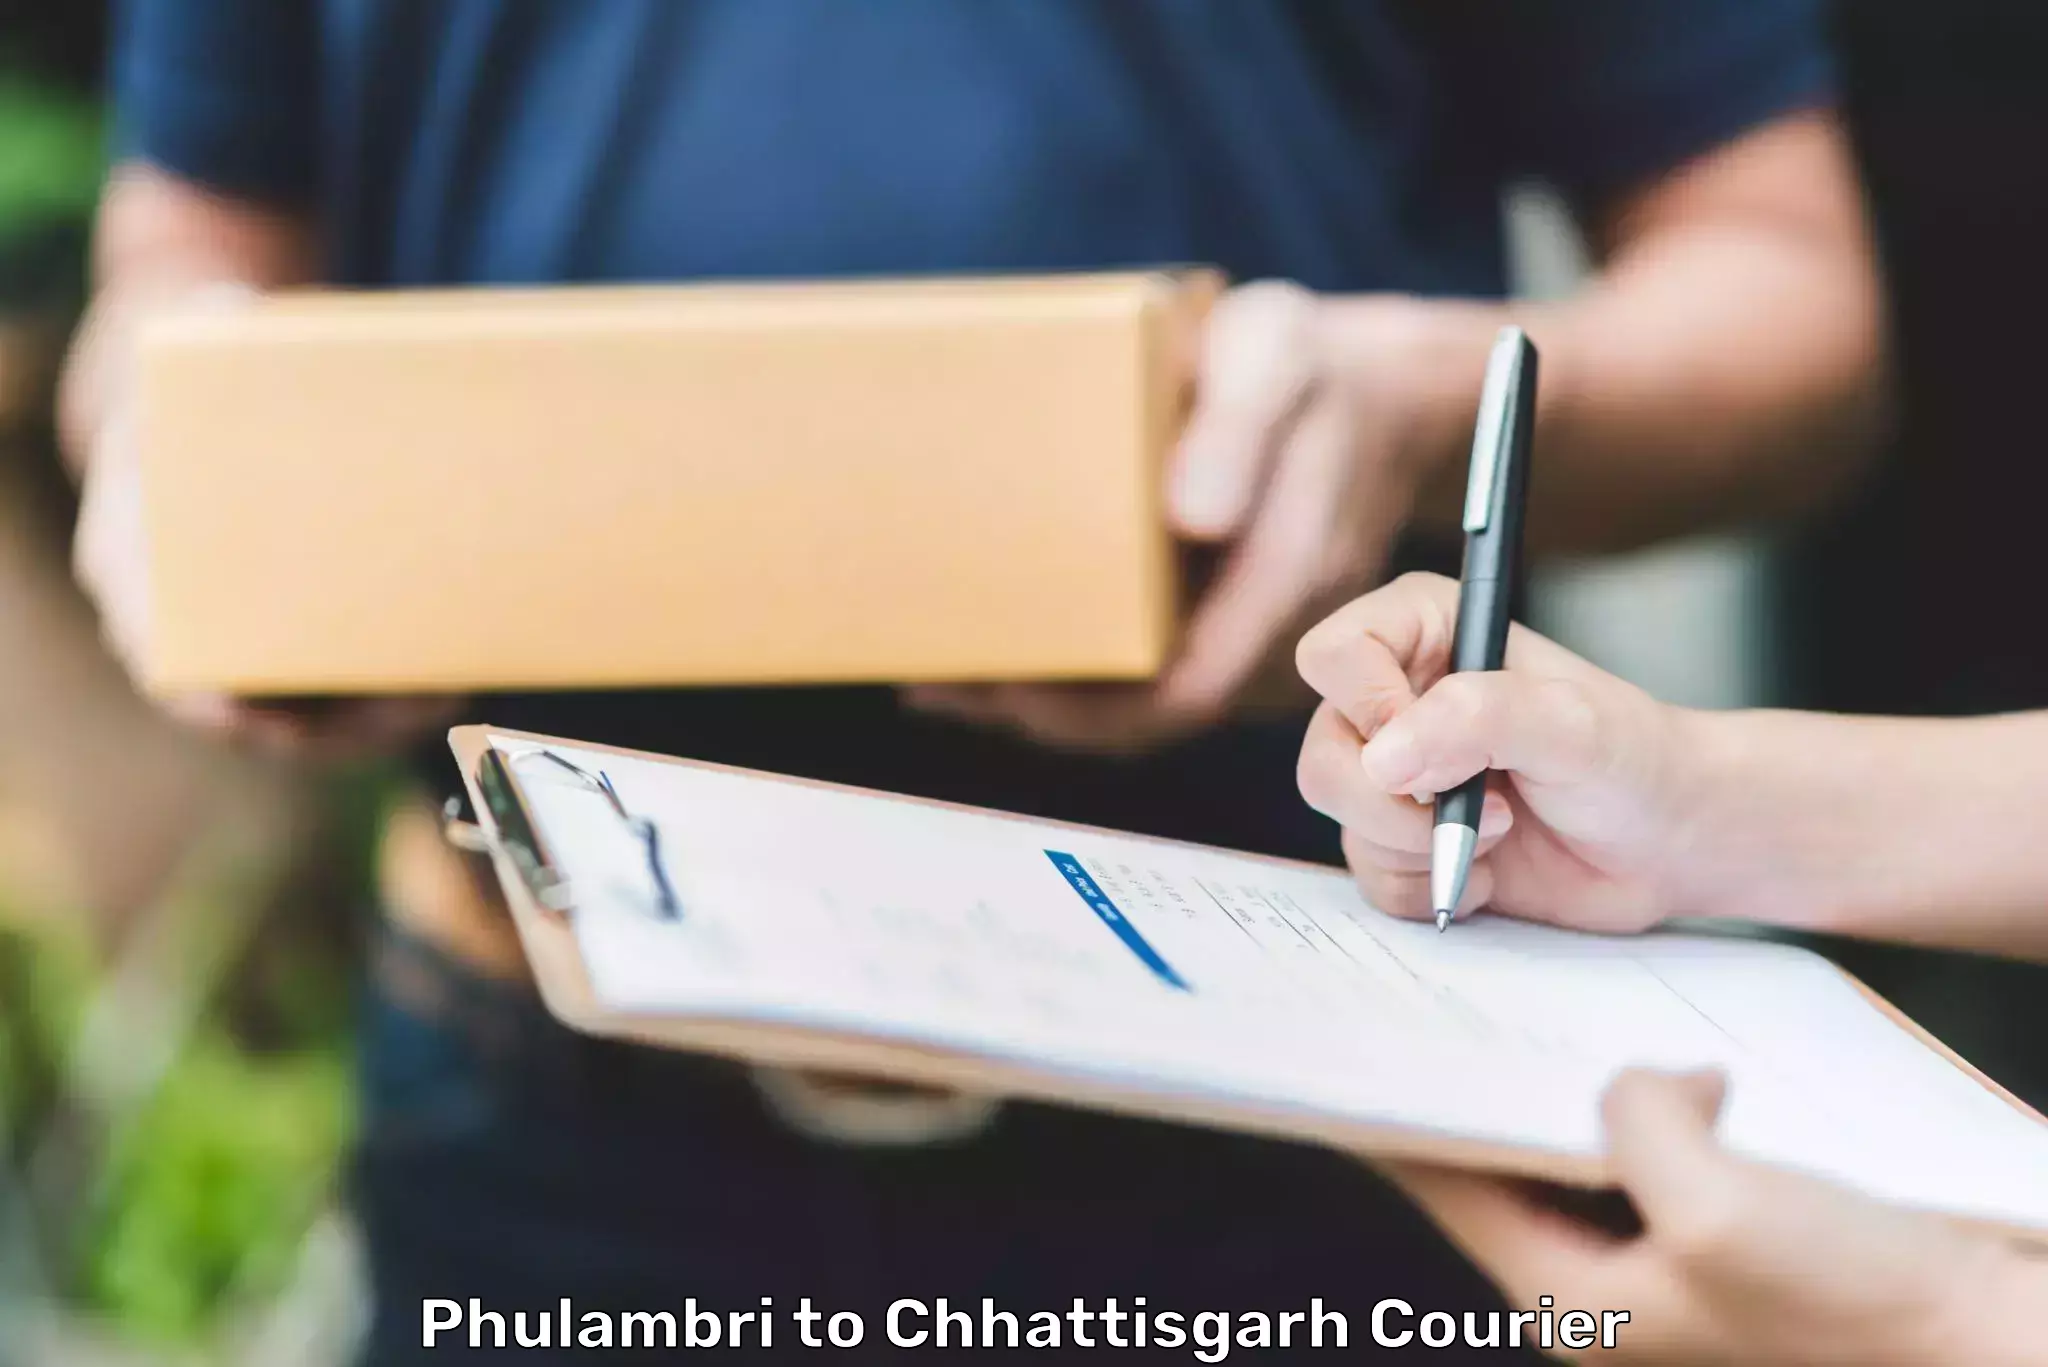 Reliable delivery network Phulambri to Chhattisgarh